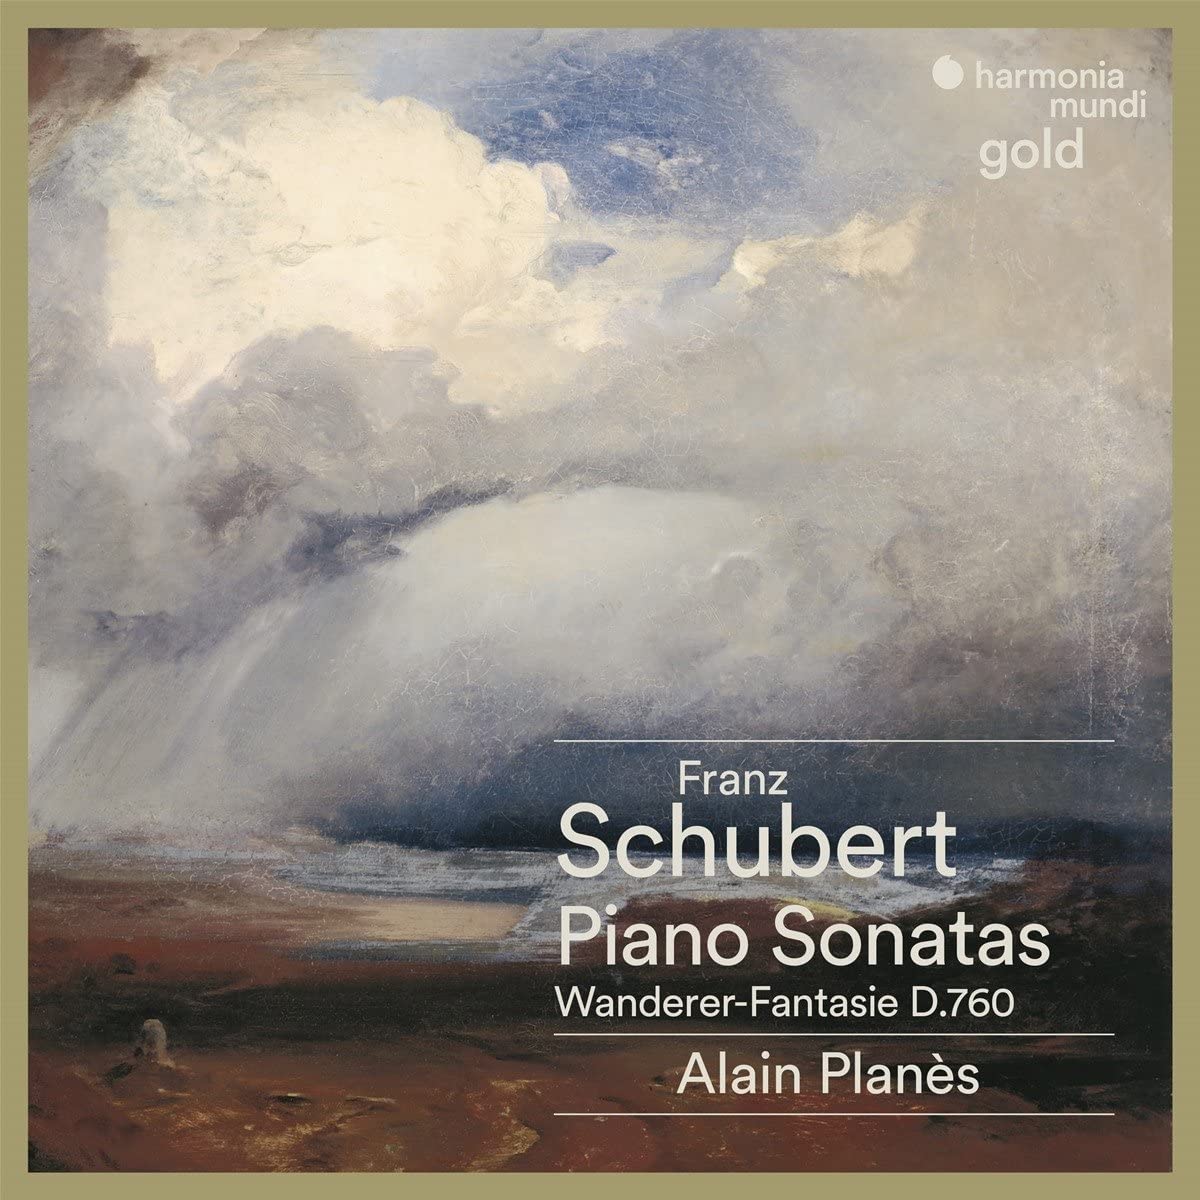 Franz Schubert: Piano Sonatas. Wanderer-Fantasie D.760 | Alain Planes, Franz Schubert